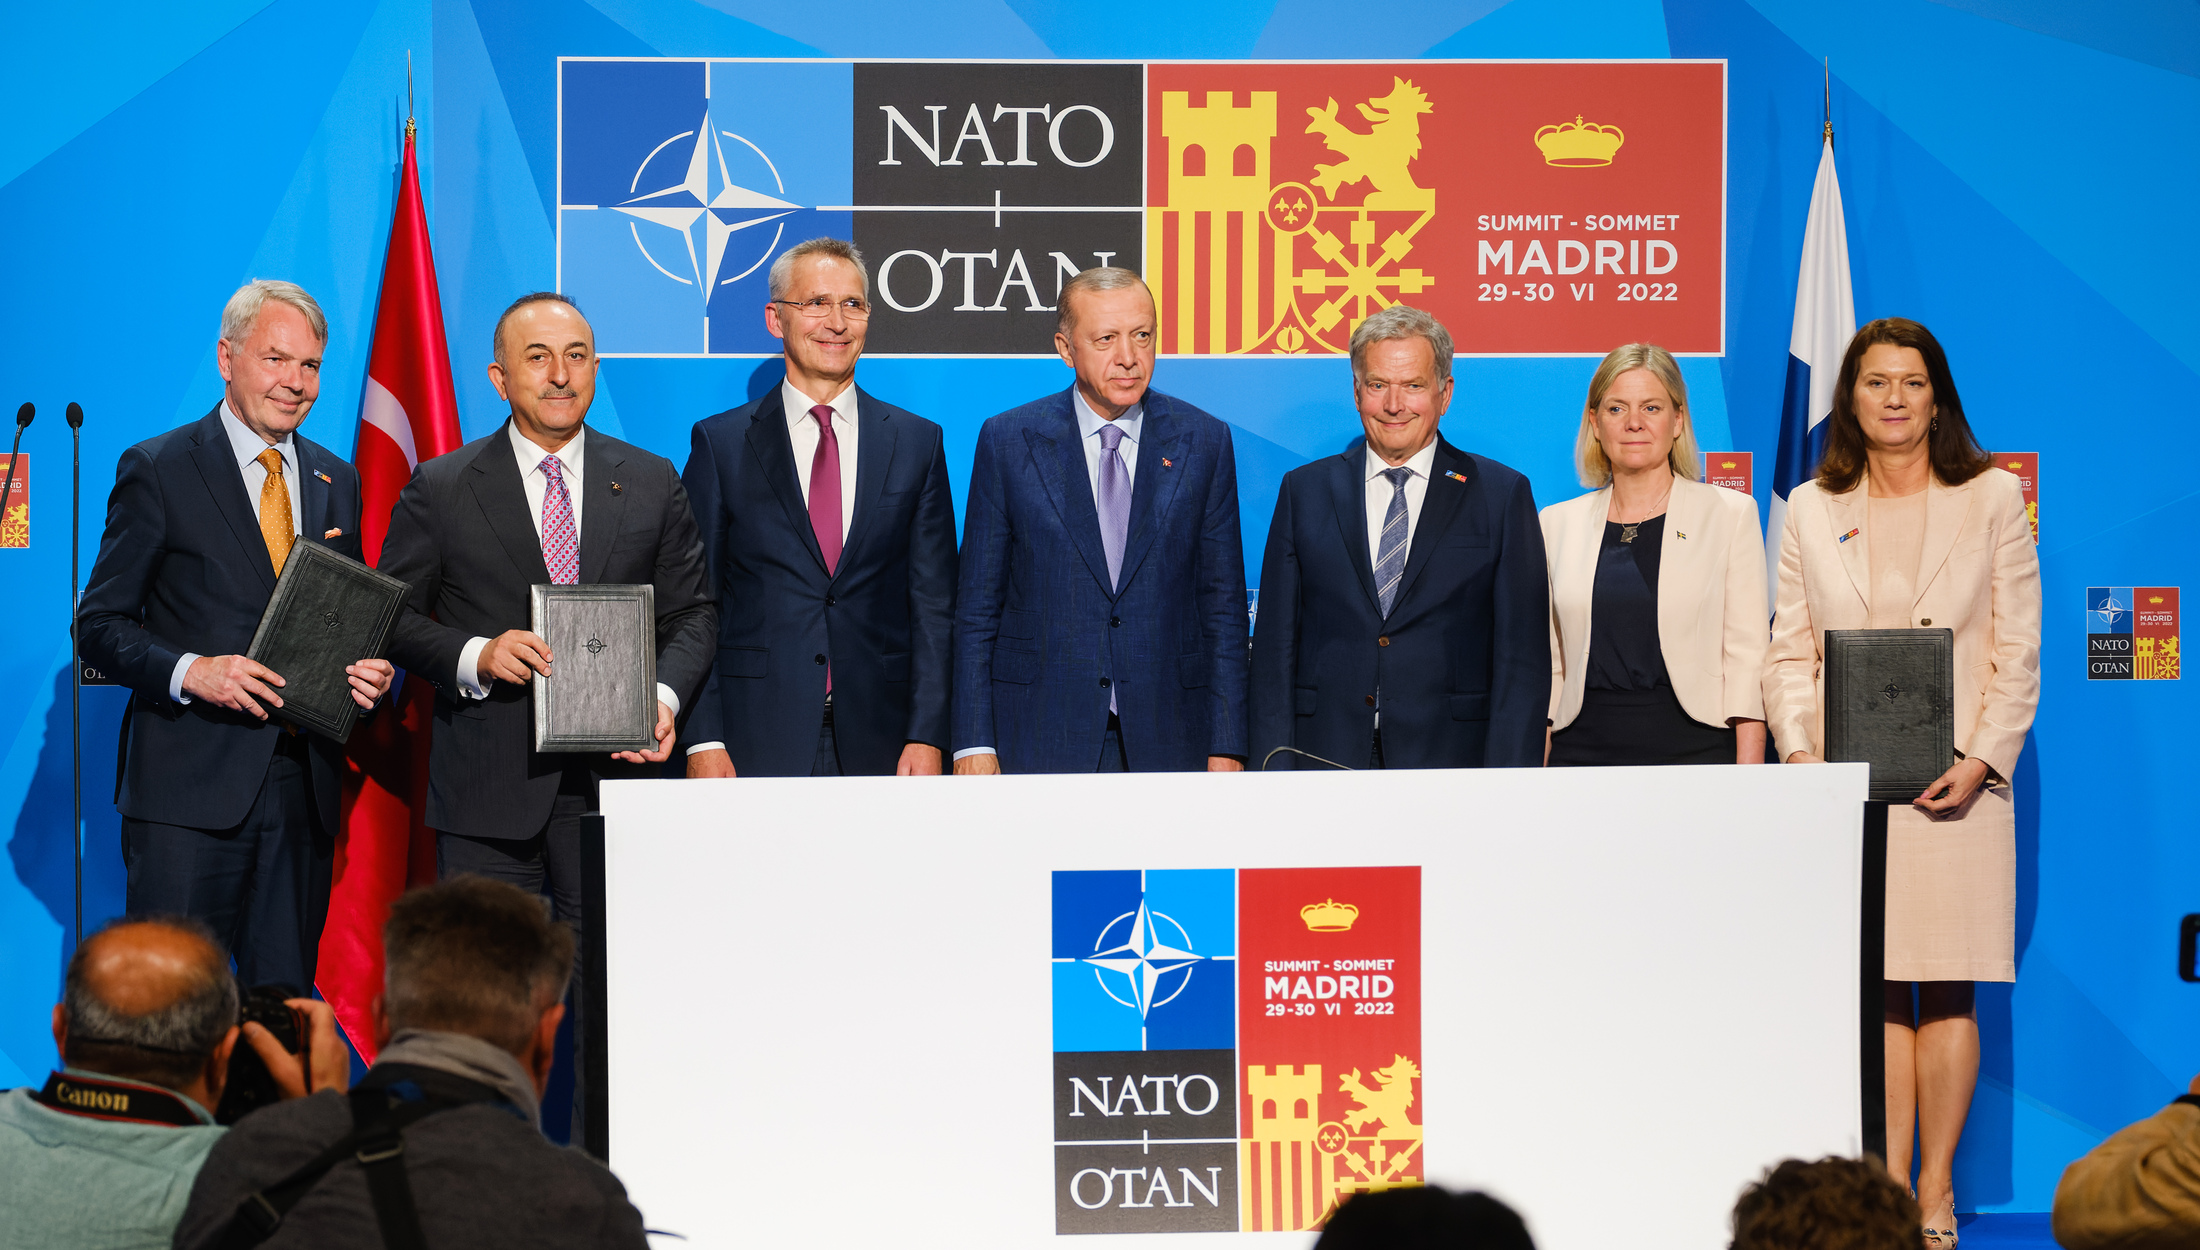 Швеция в нато официально. Саммит НАТО В Мадриде 2022. Мадридский саммит НАТО В 2022 году. Саммит в Мадриде 1997. Саммит НАТО В Мадриде.